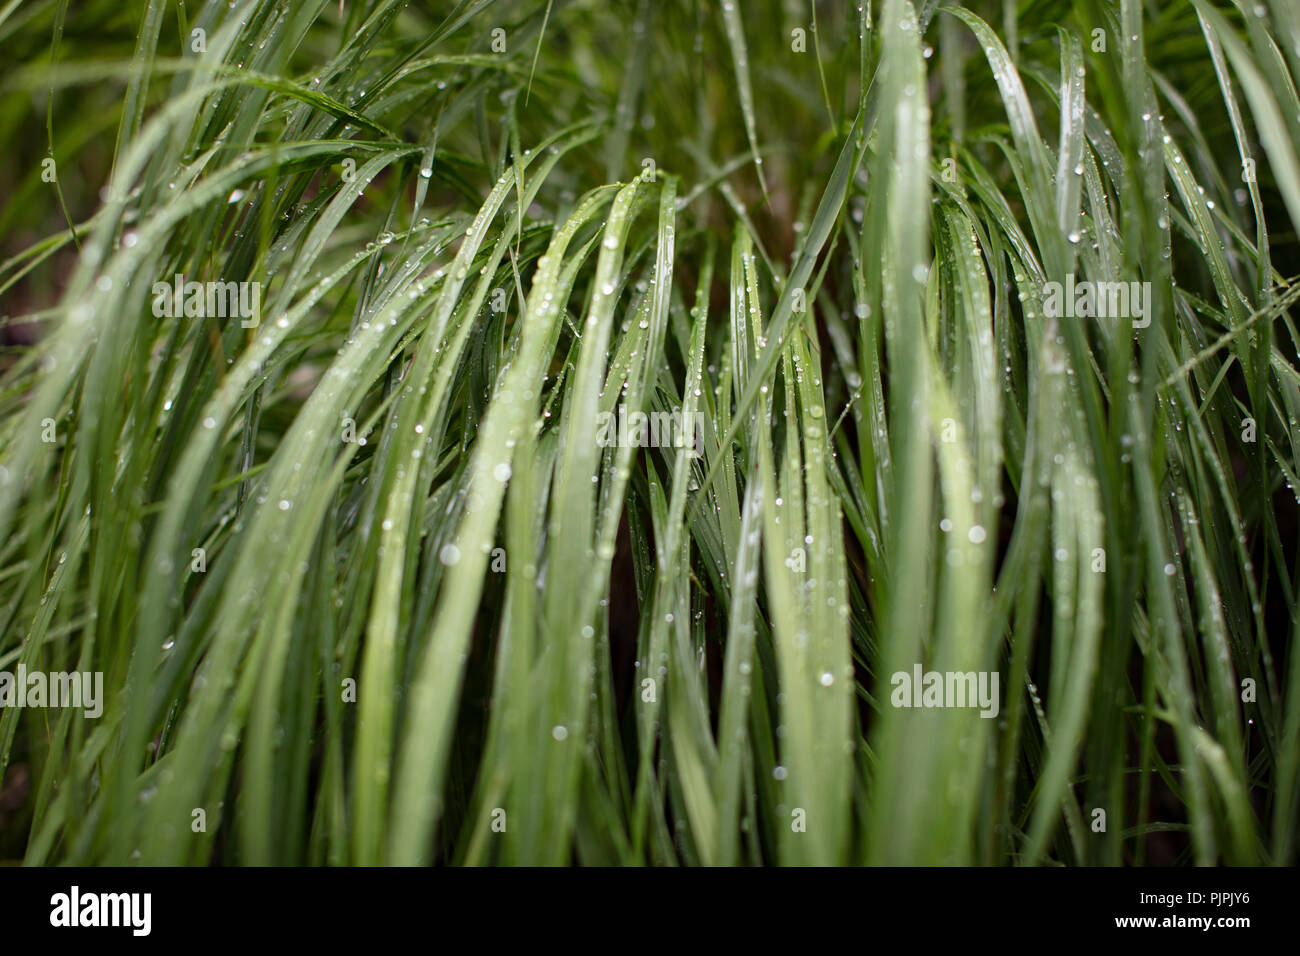 Green wet grass Stock Photo